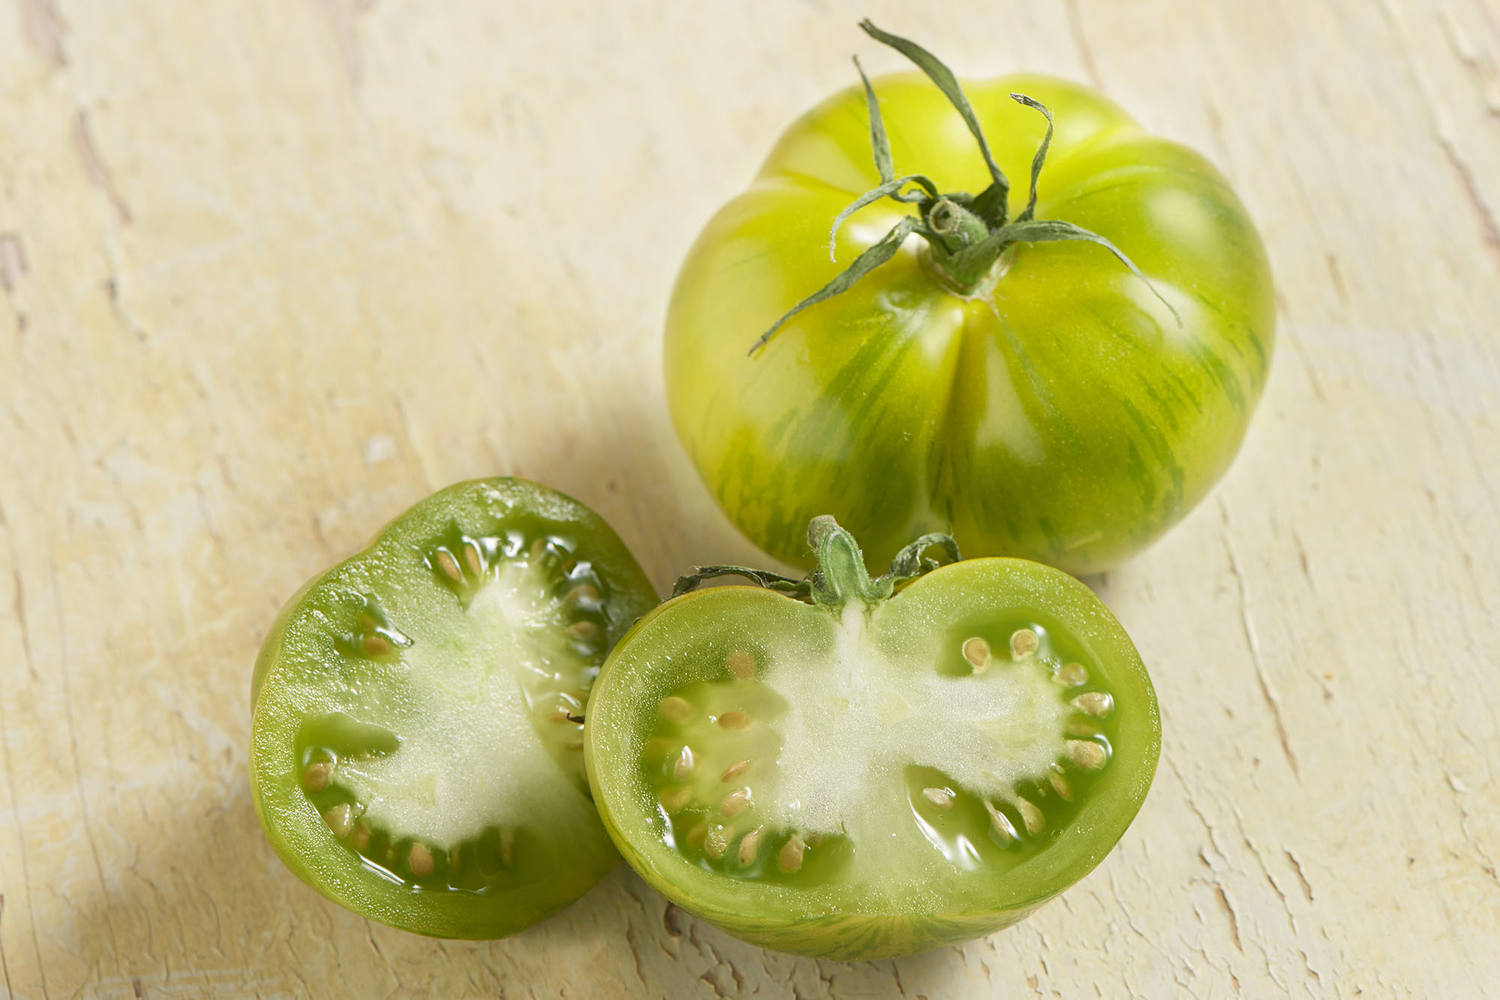 Tijger tomaten groen kist 3 kilogram 2